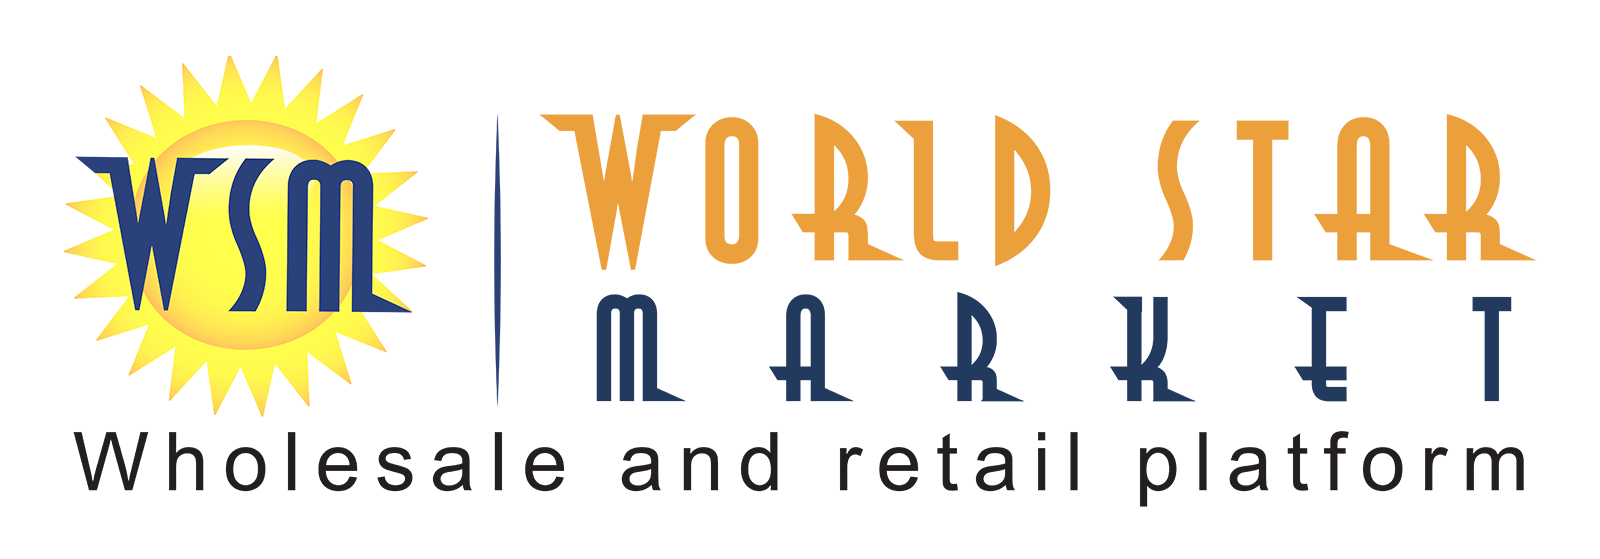 World Star Market